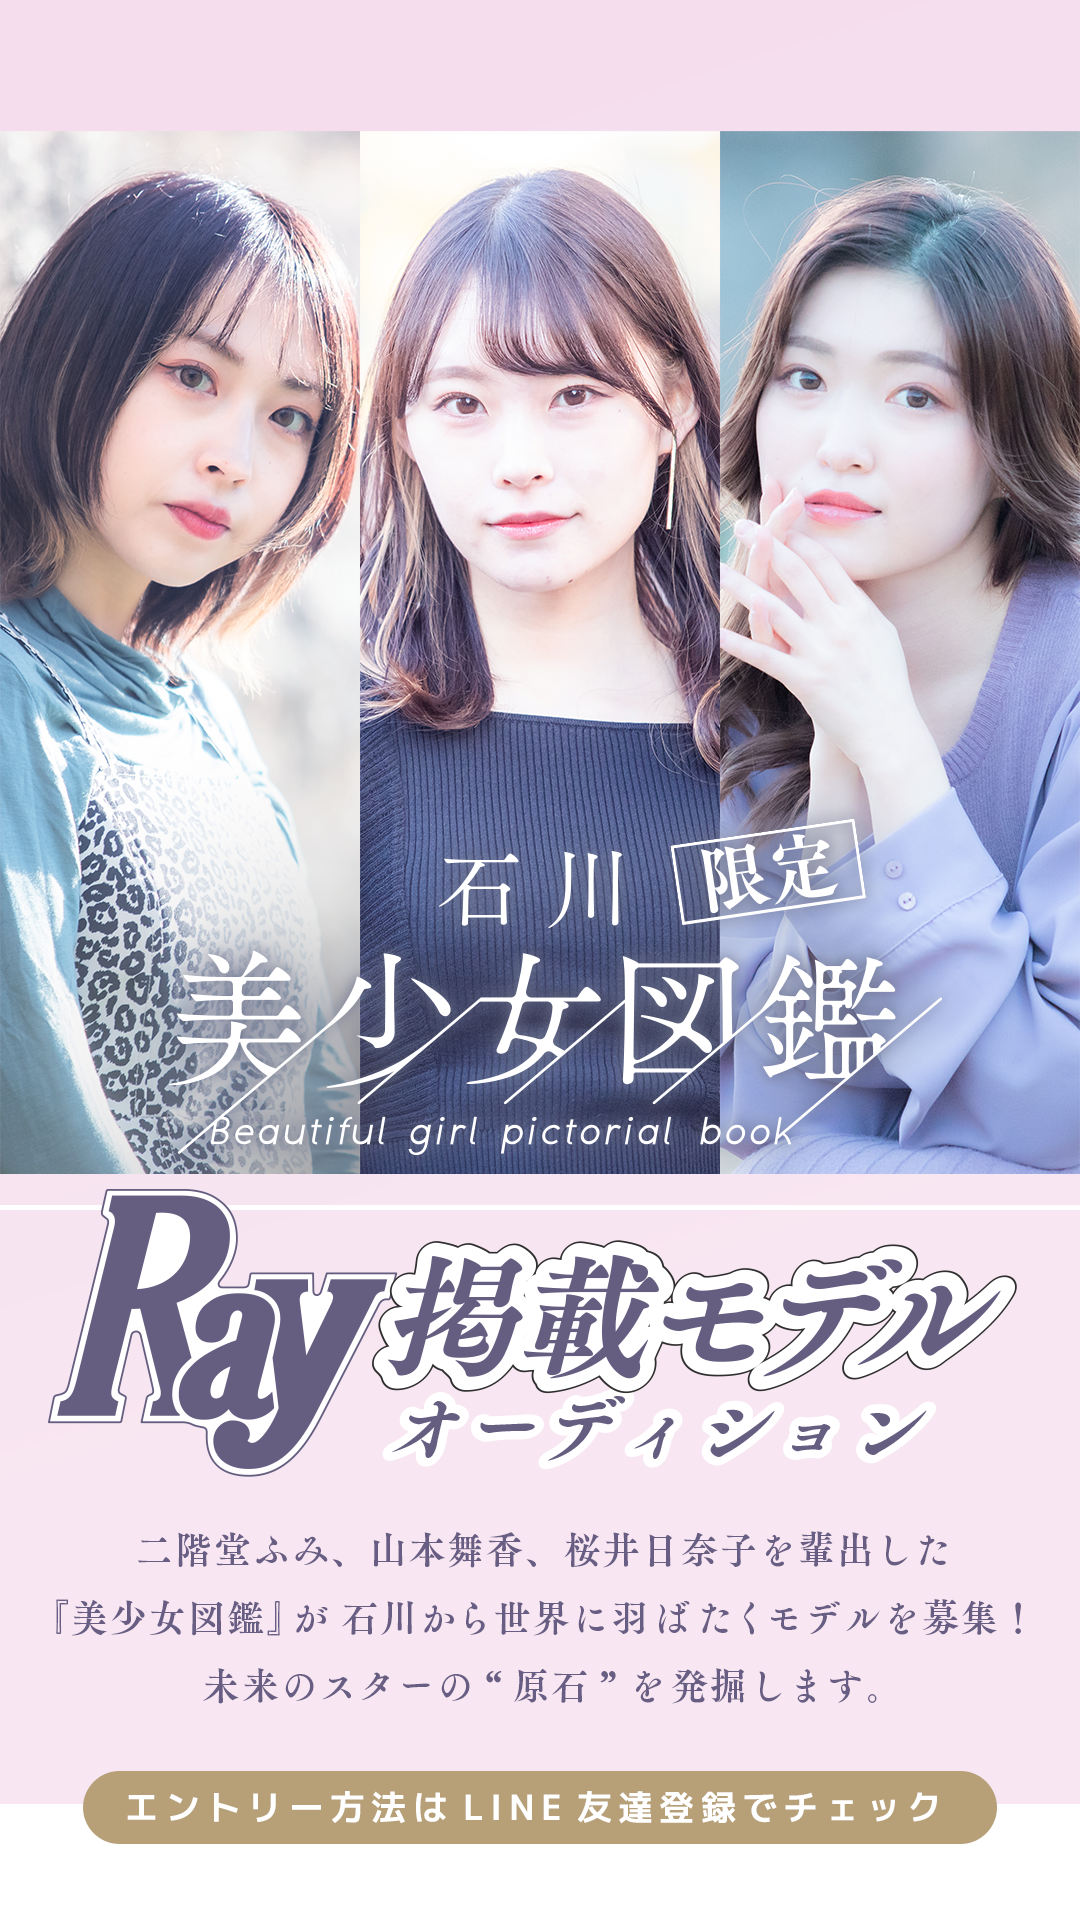 −石川美少女図鑑限定−「Ray」掲載モデルオーディション